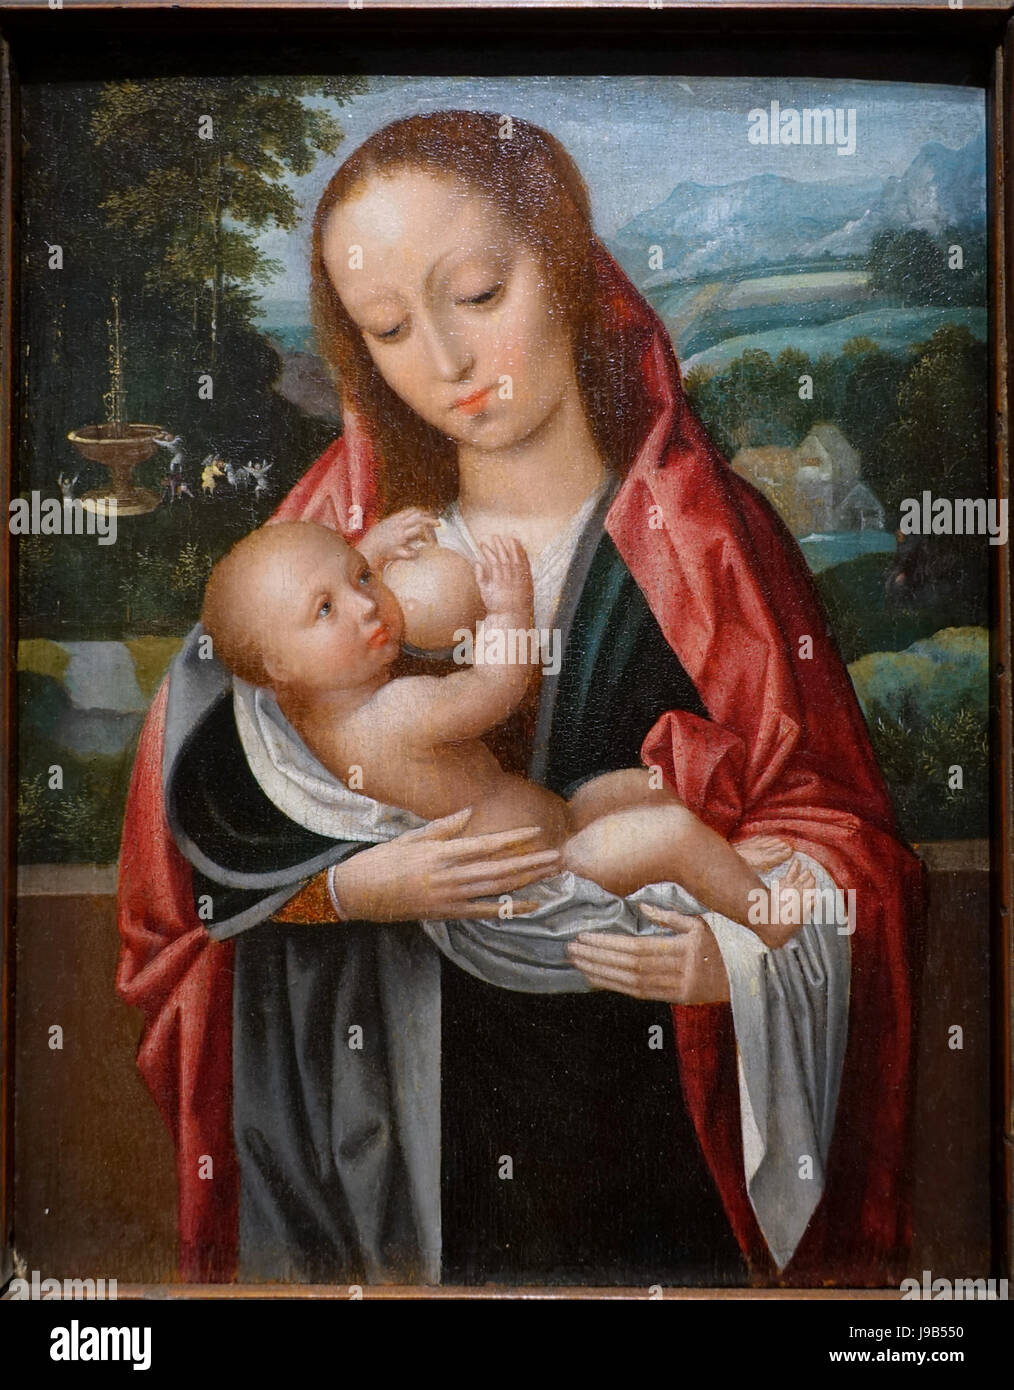 Vierge à l'enfant, d'Ambrosius Benson et peut-être, l'atelier de Bruges, Russisch, ch. 1495, 1550 huile sur panneau Wadsworth Atheneum Hartford, CT DSC05107 Banque D'Images